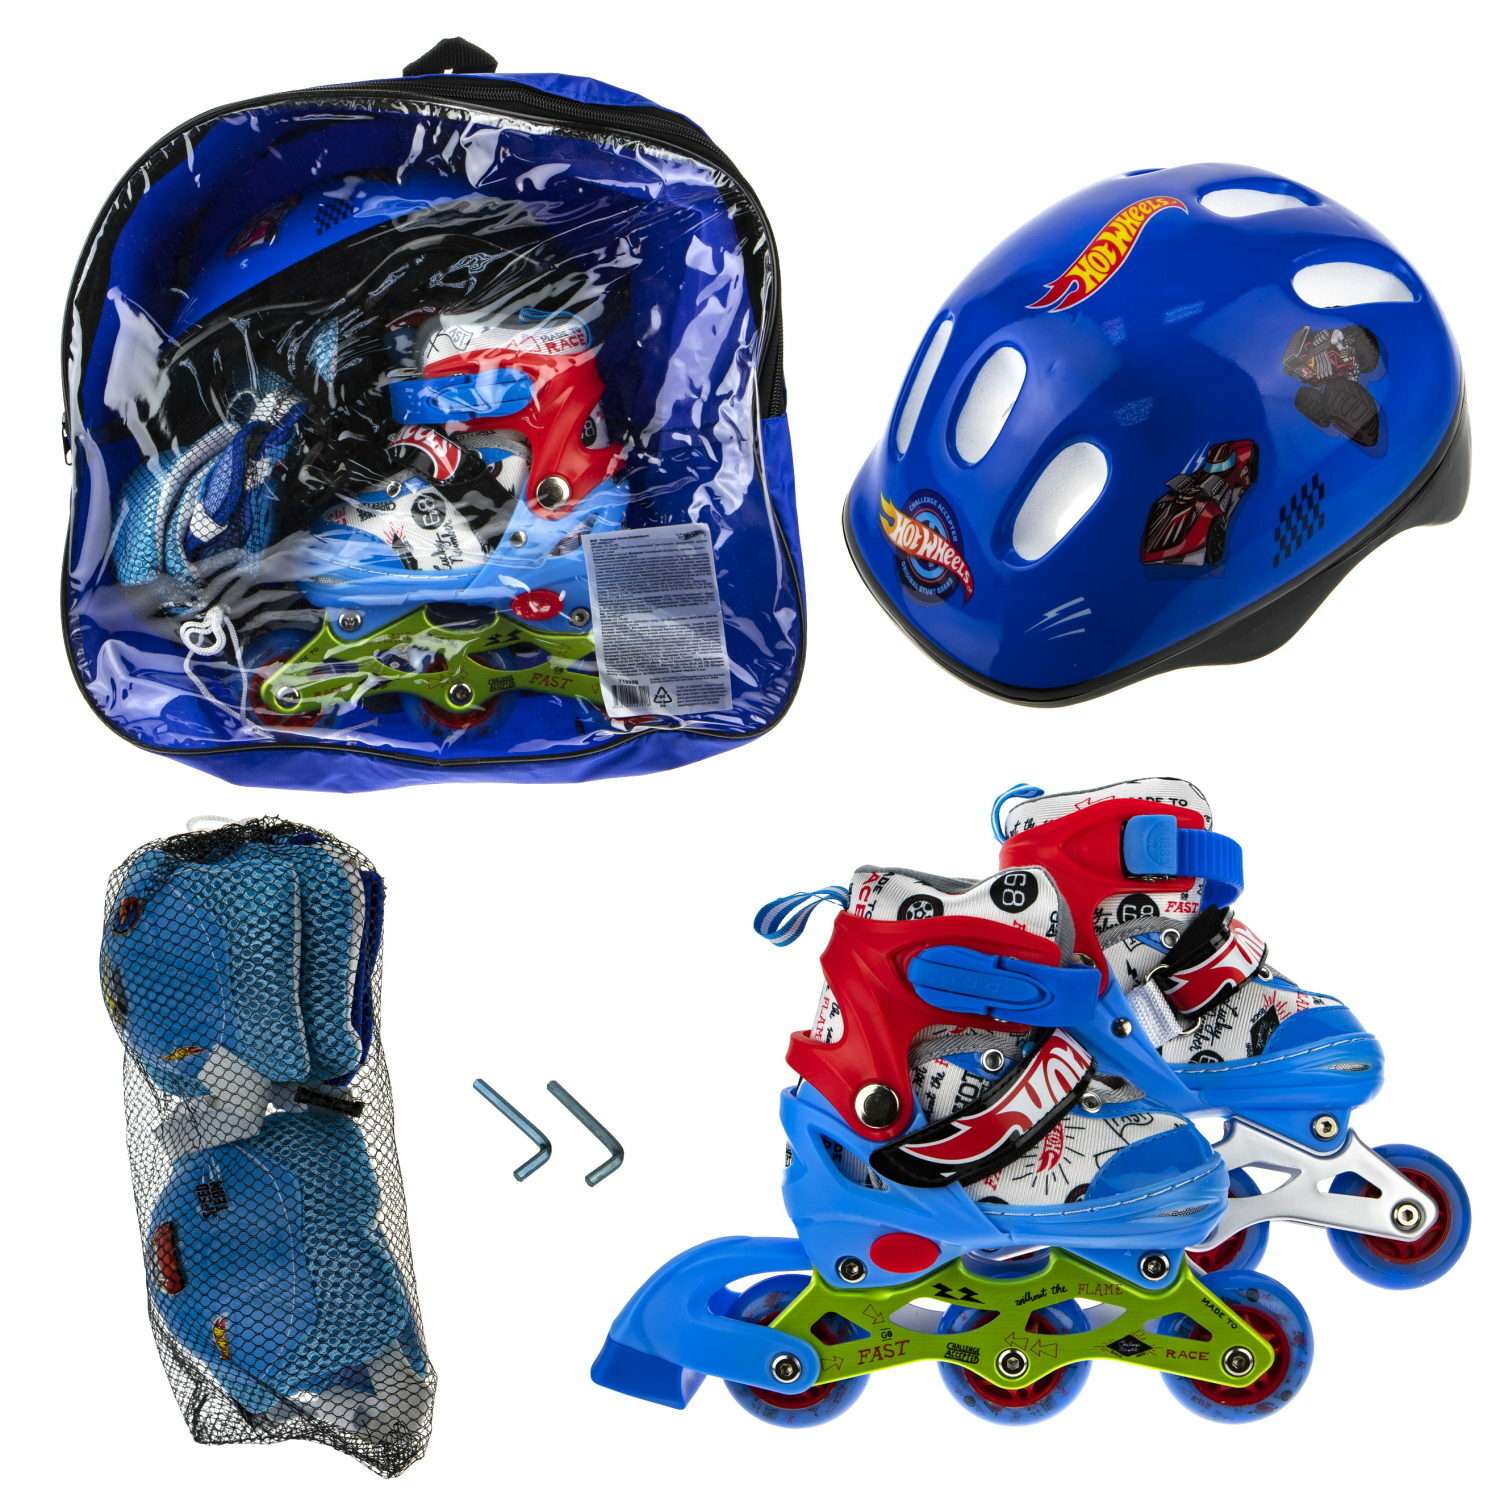 Коньки роликовые Hot Wheels со светом в комплекте с защитой и шлемом S 30-33 - фото 7